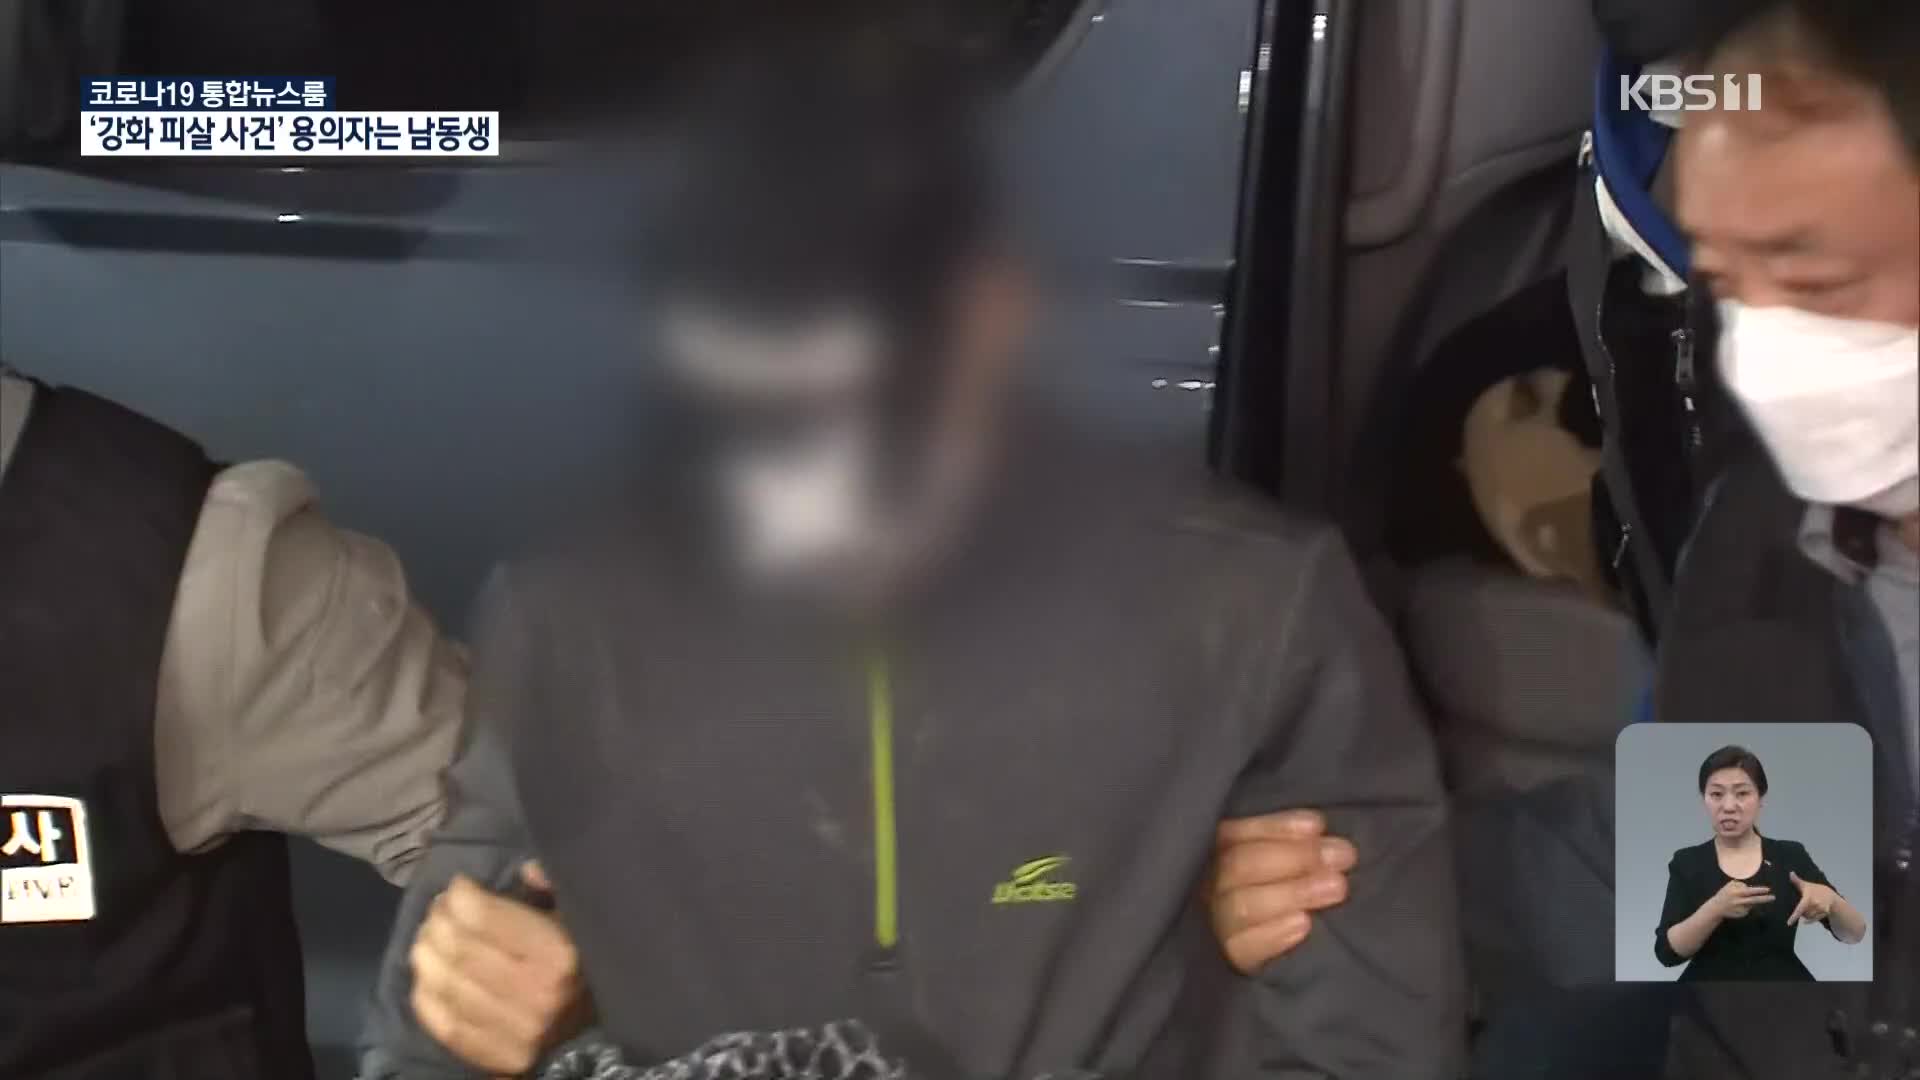 ‘강화 농수로 피살사건’ 용의자 20대 남동생 체포